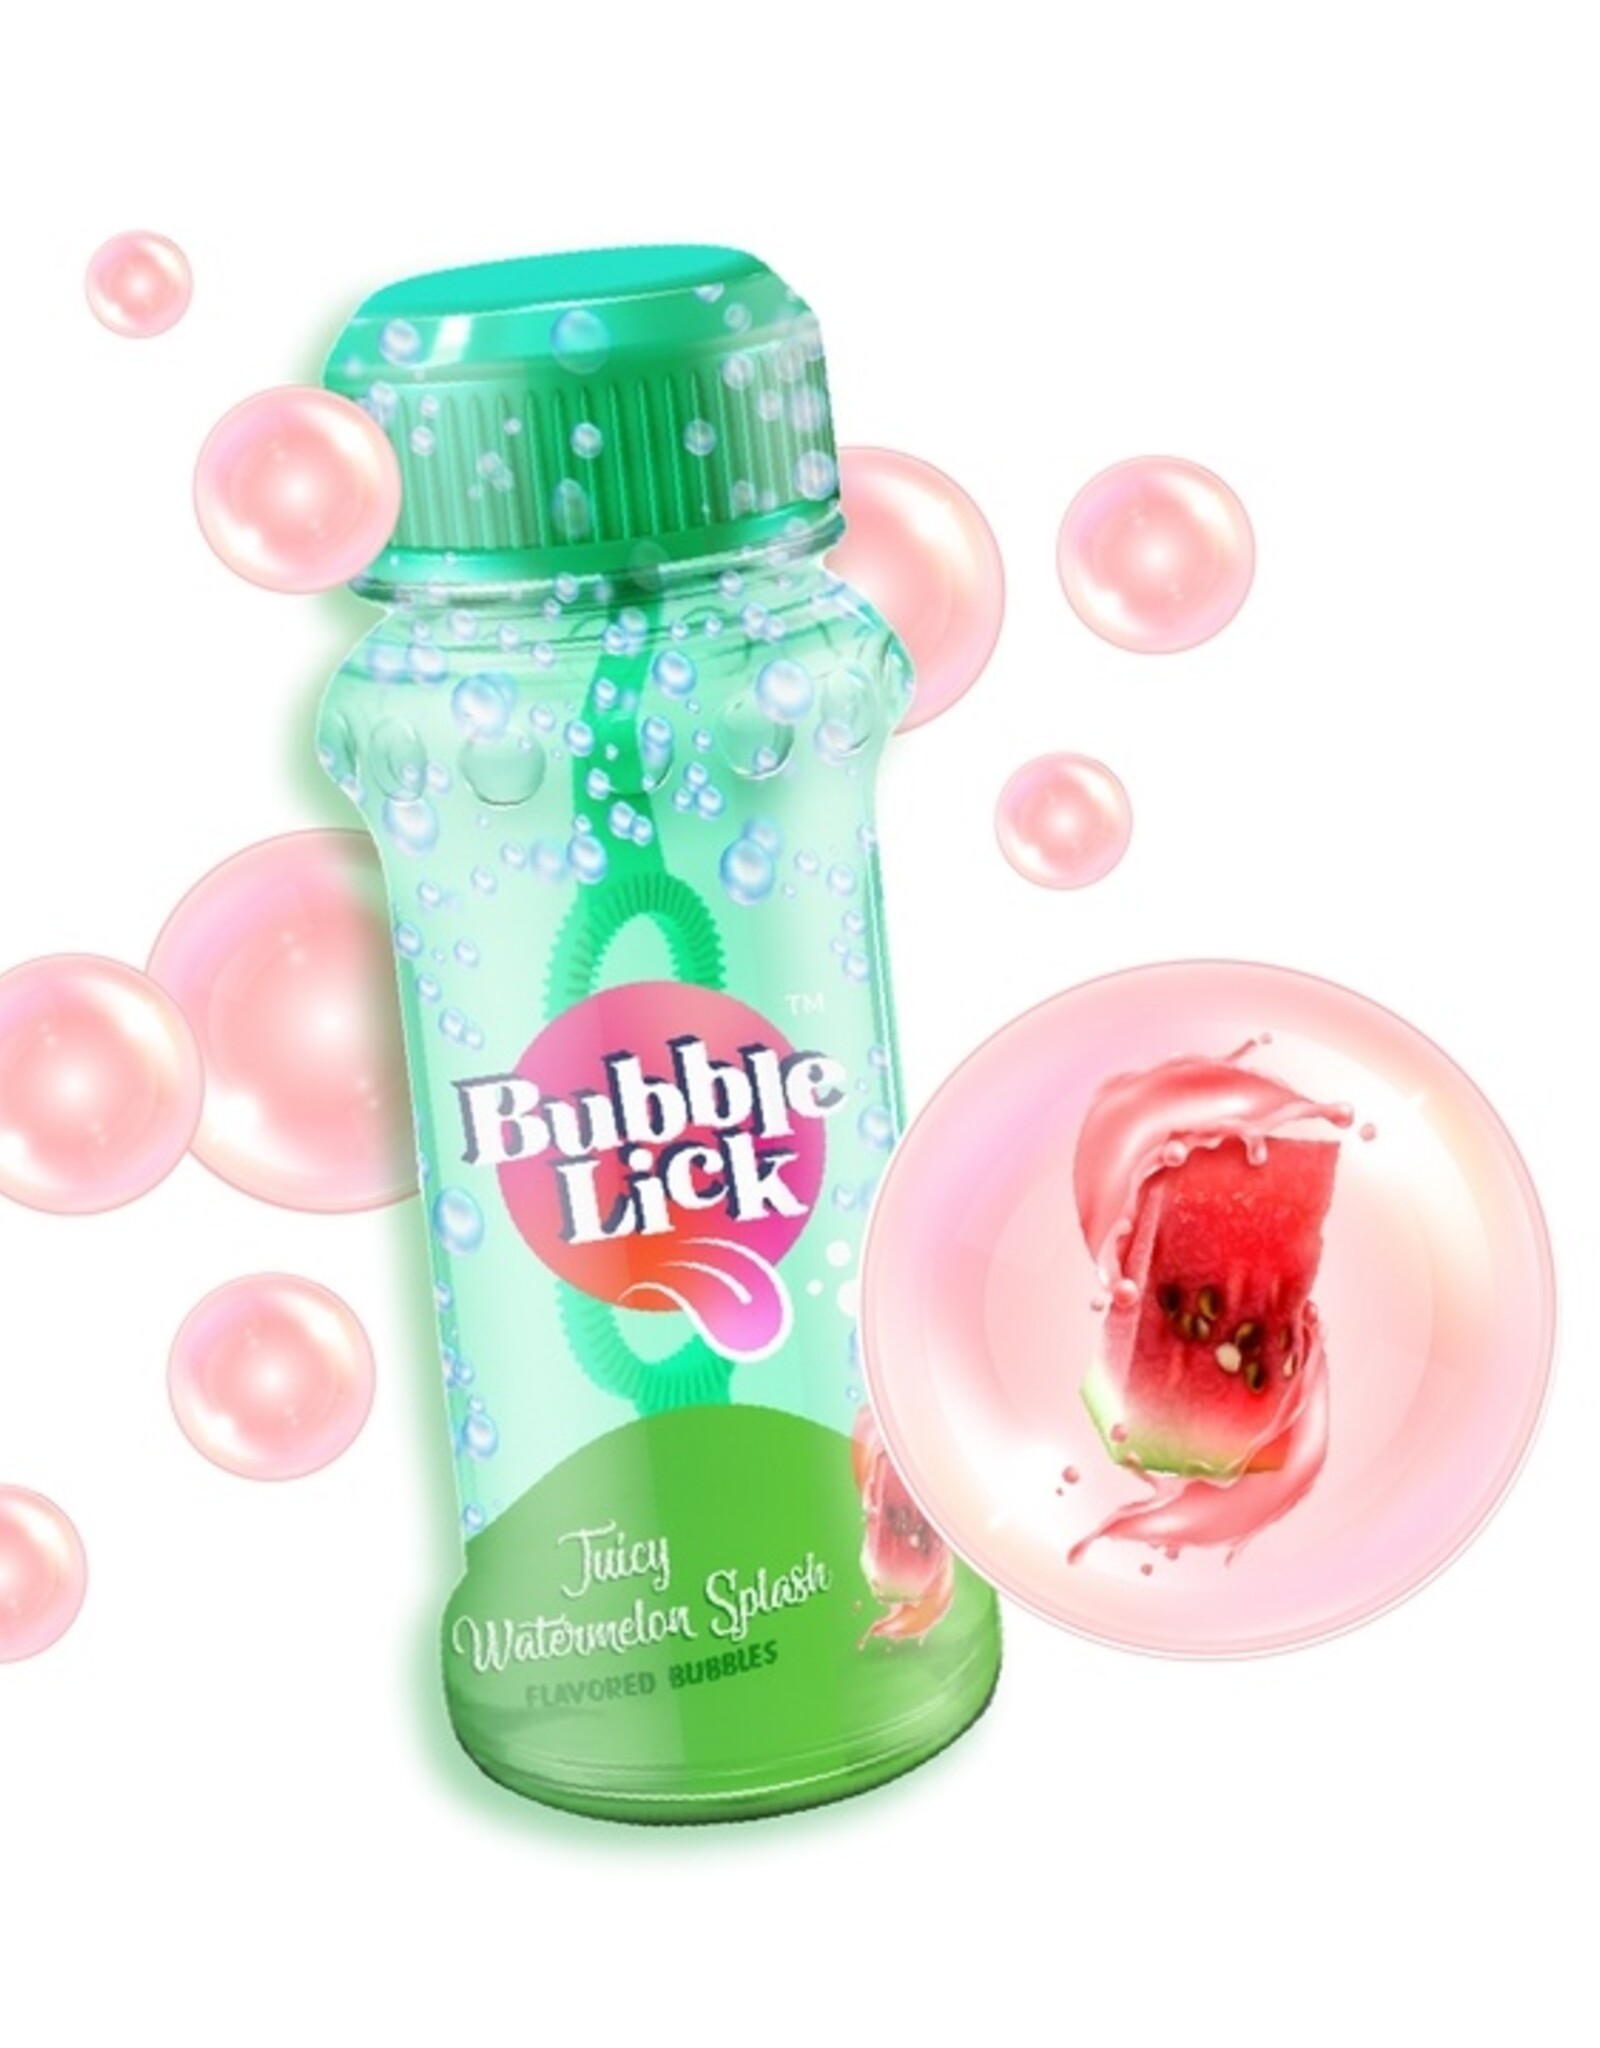 Toysmith Bubble Lick Watermelon Bubbles